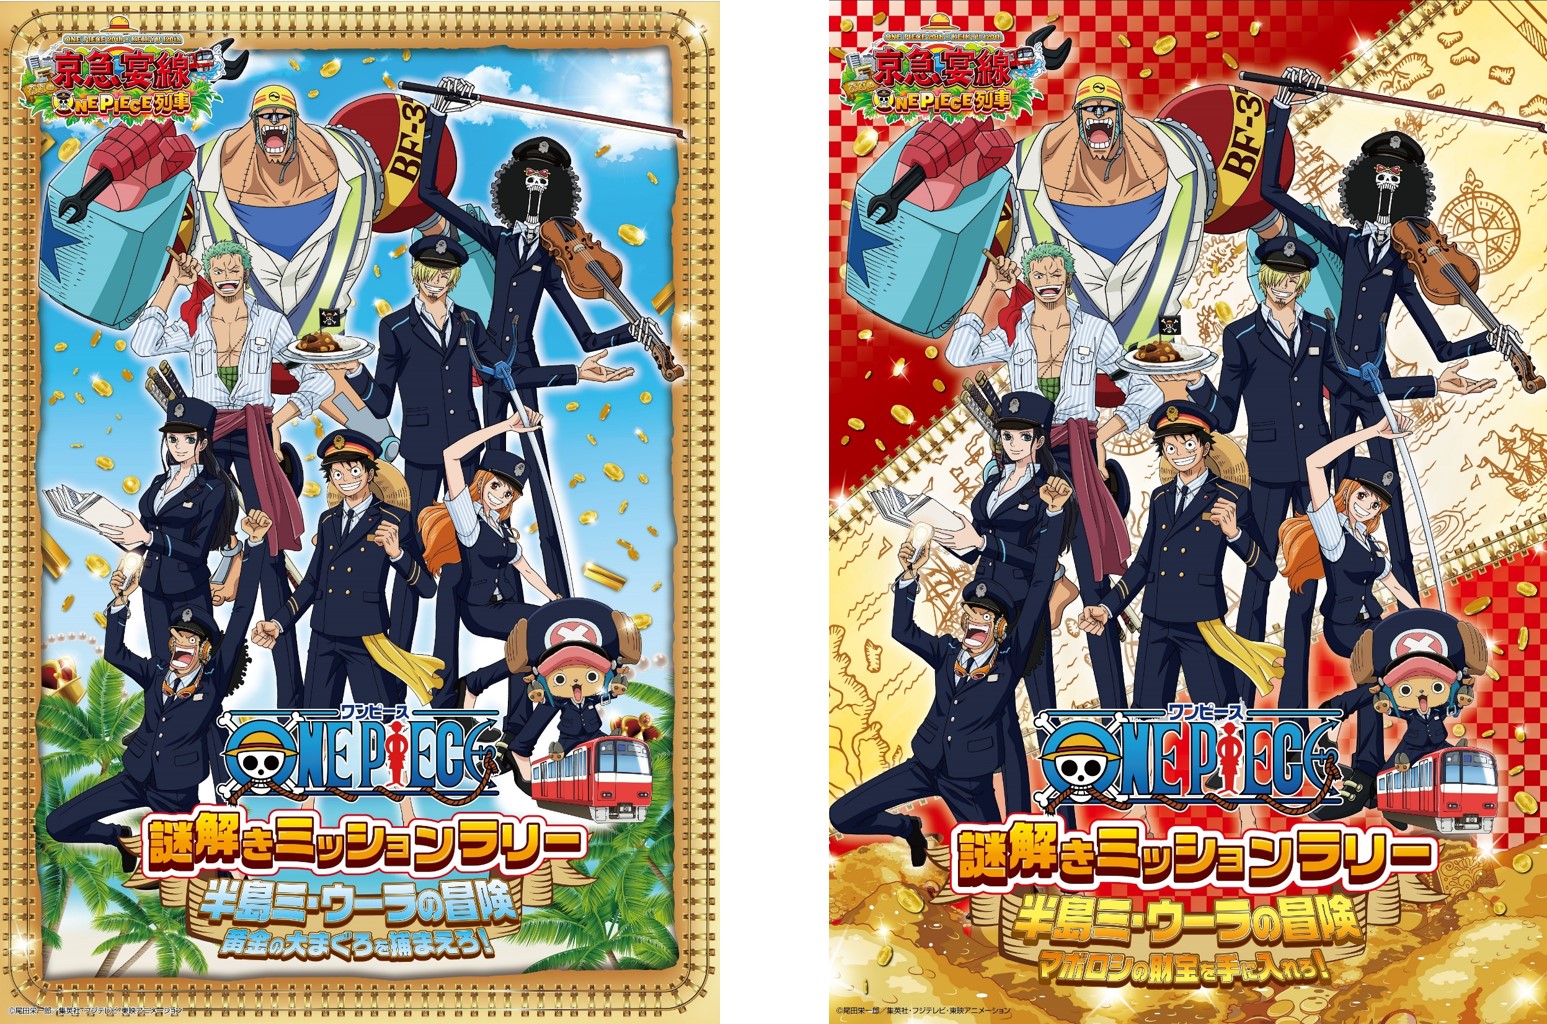 京急電鉄で One Piece謎解きミッションラリー 開催 駅を巡りながら謎を解こう バンダイナムコアミューズメントのプレスリリース